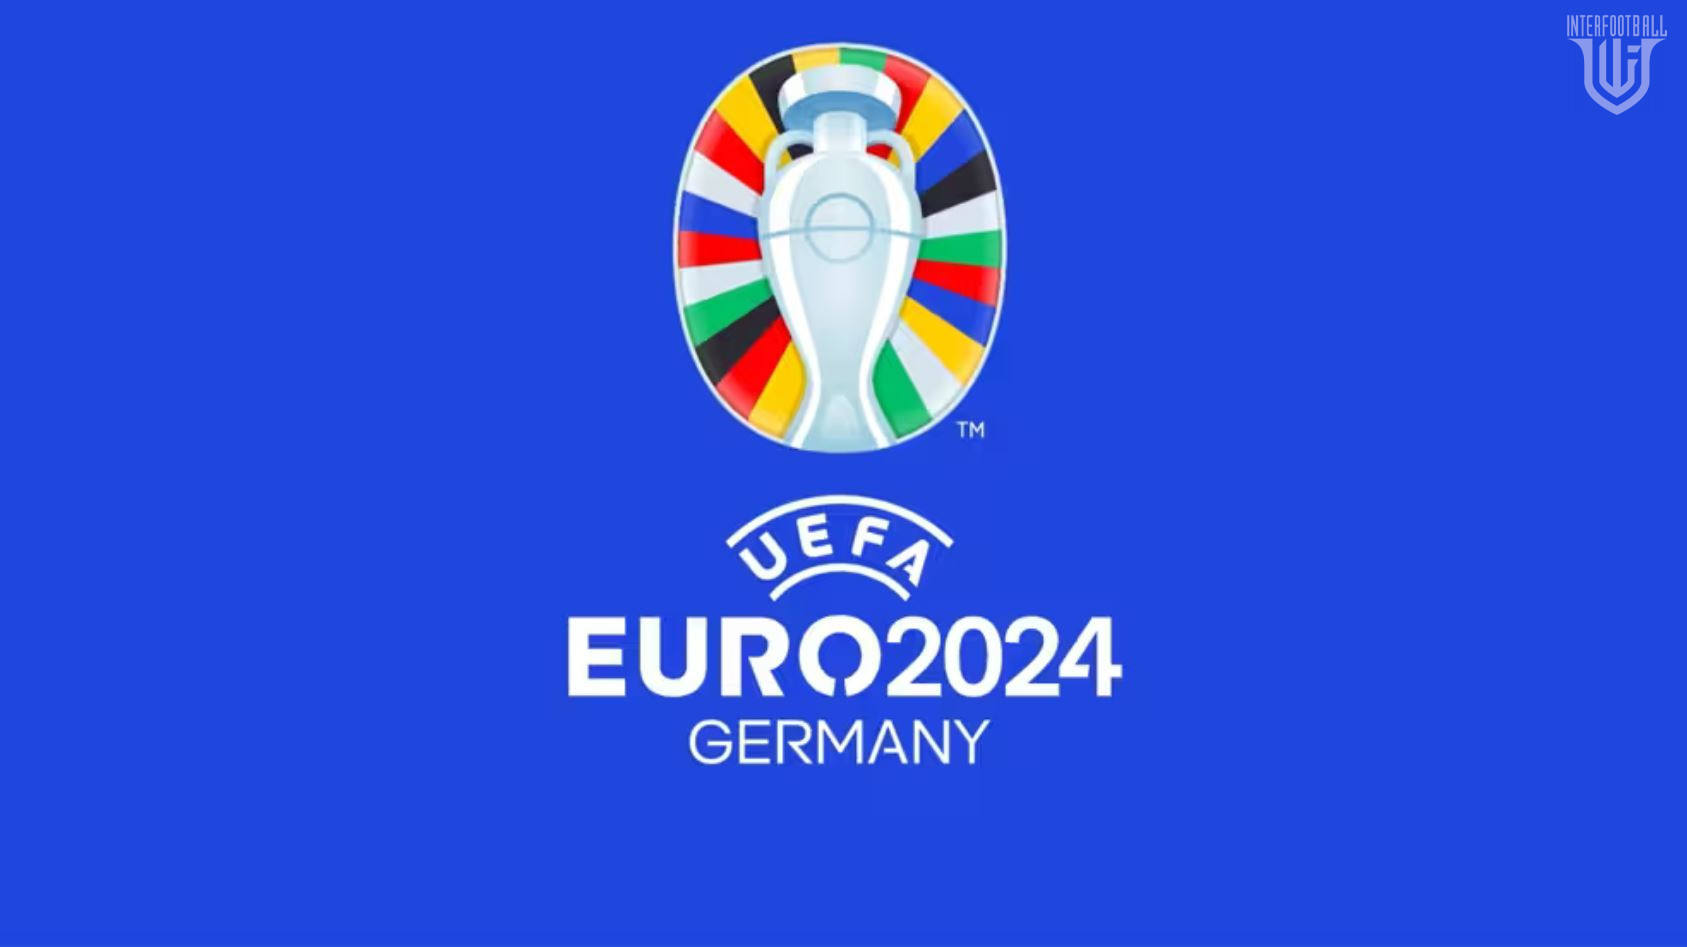 Եվրո-2024. Հուլիսի 1-ի հանդիպումներն ու մրցավարական անձնակազմերը